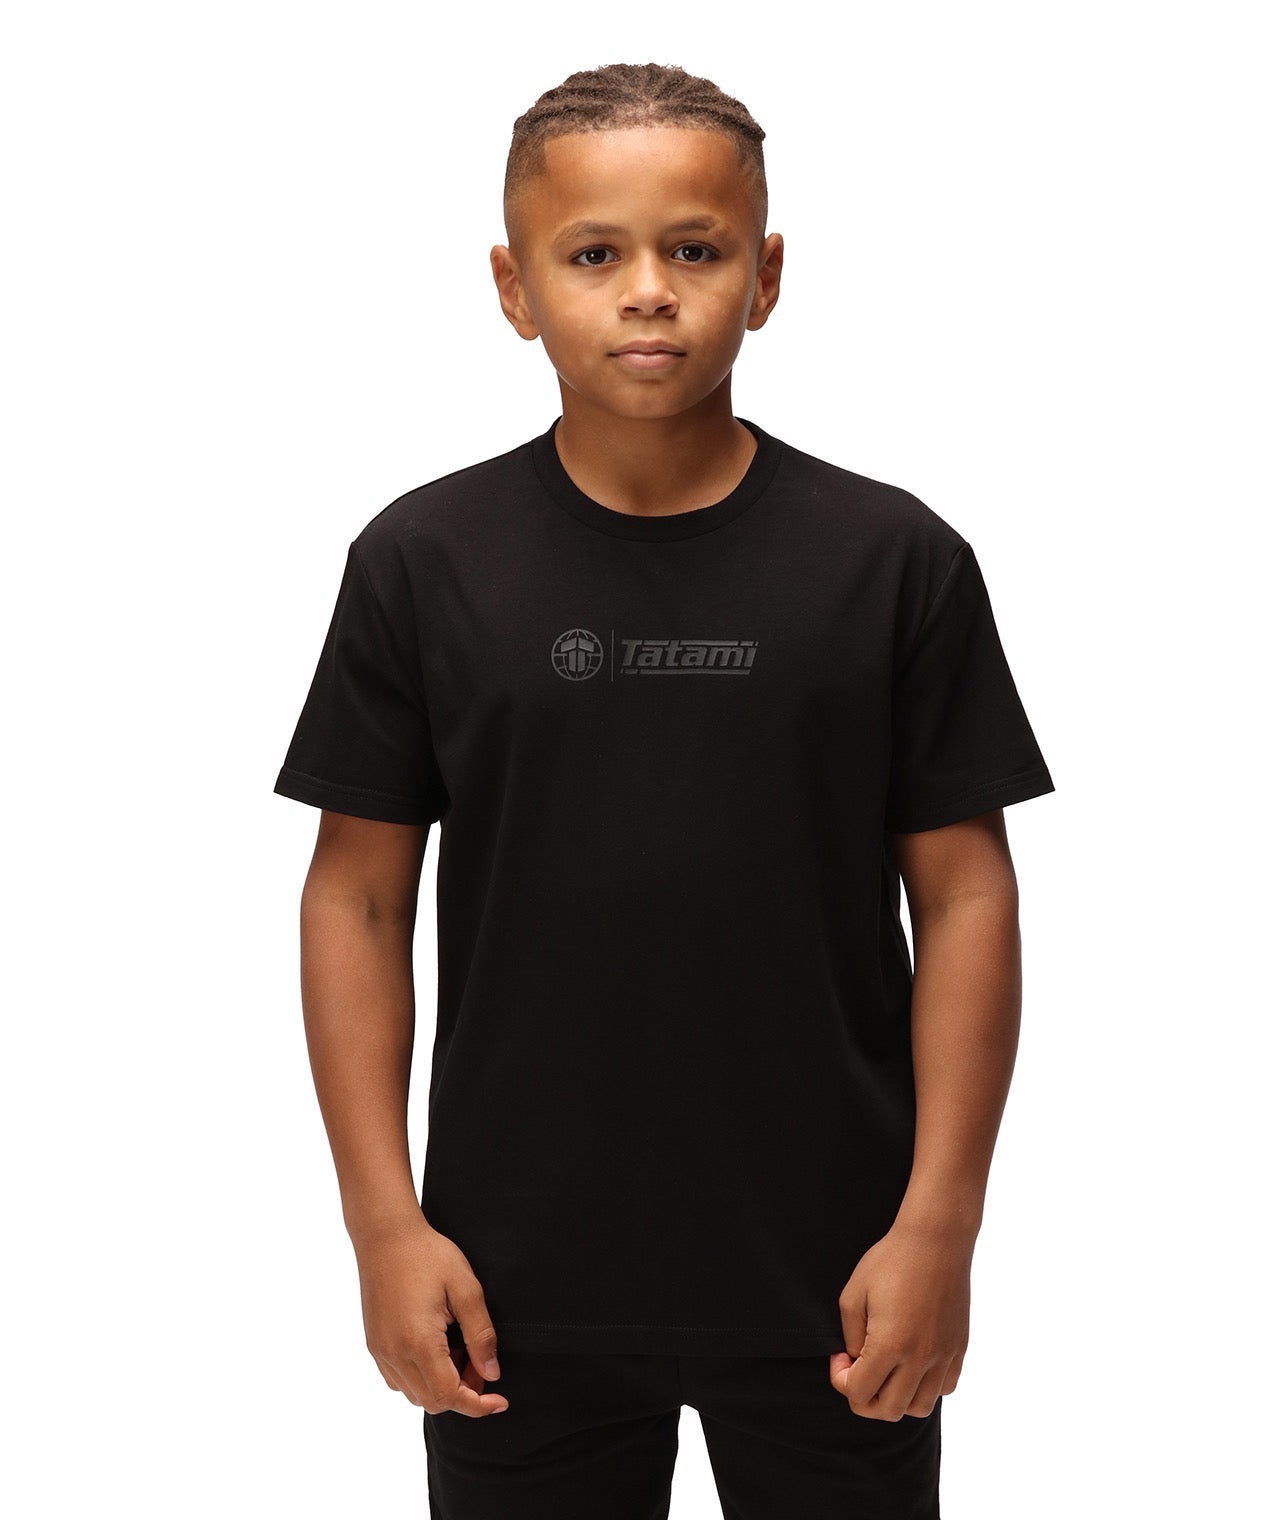 Kids Impact T-Shirt - Black on Black – Tatami Fightwear Ltd.